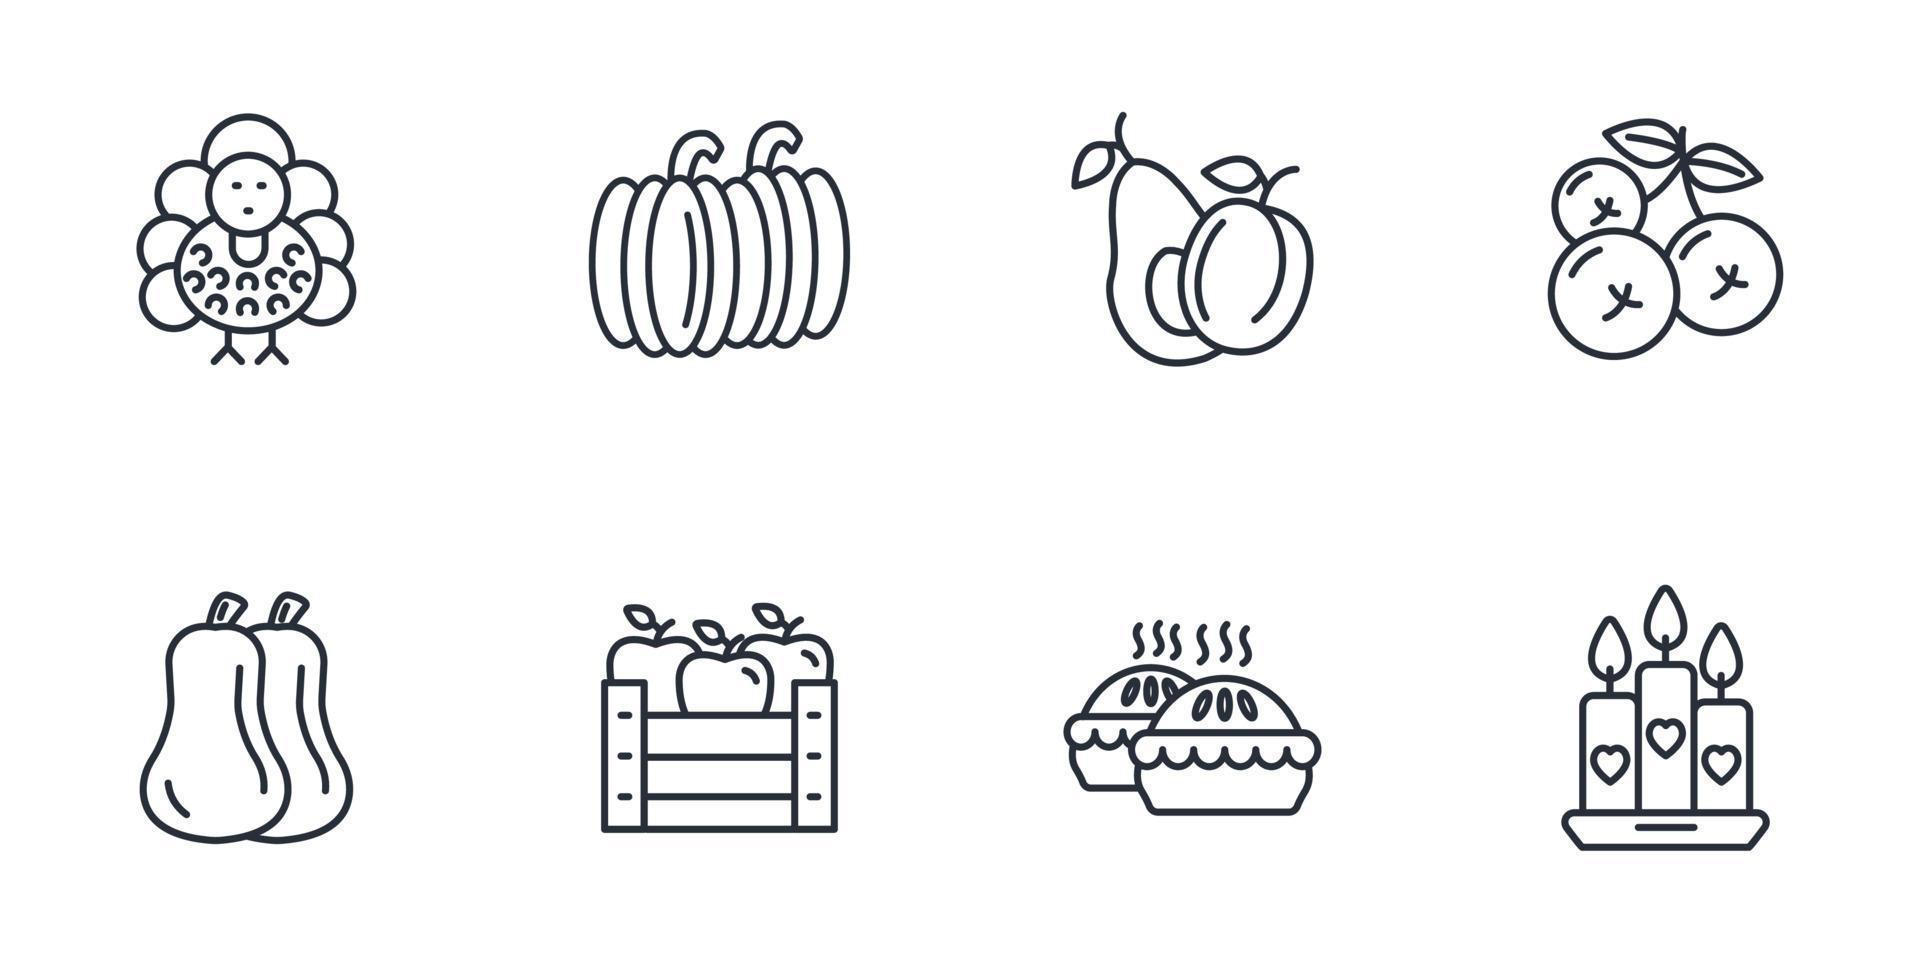 conjunto de ícones do dia de ação de graças. elementos do vetor de símbolo de pacote de dia de ação de graças para web infográfico